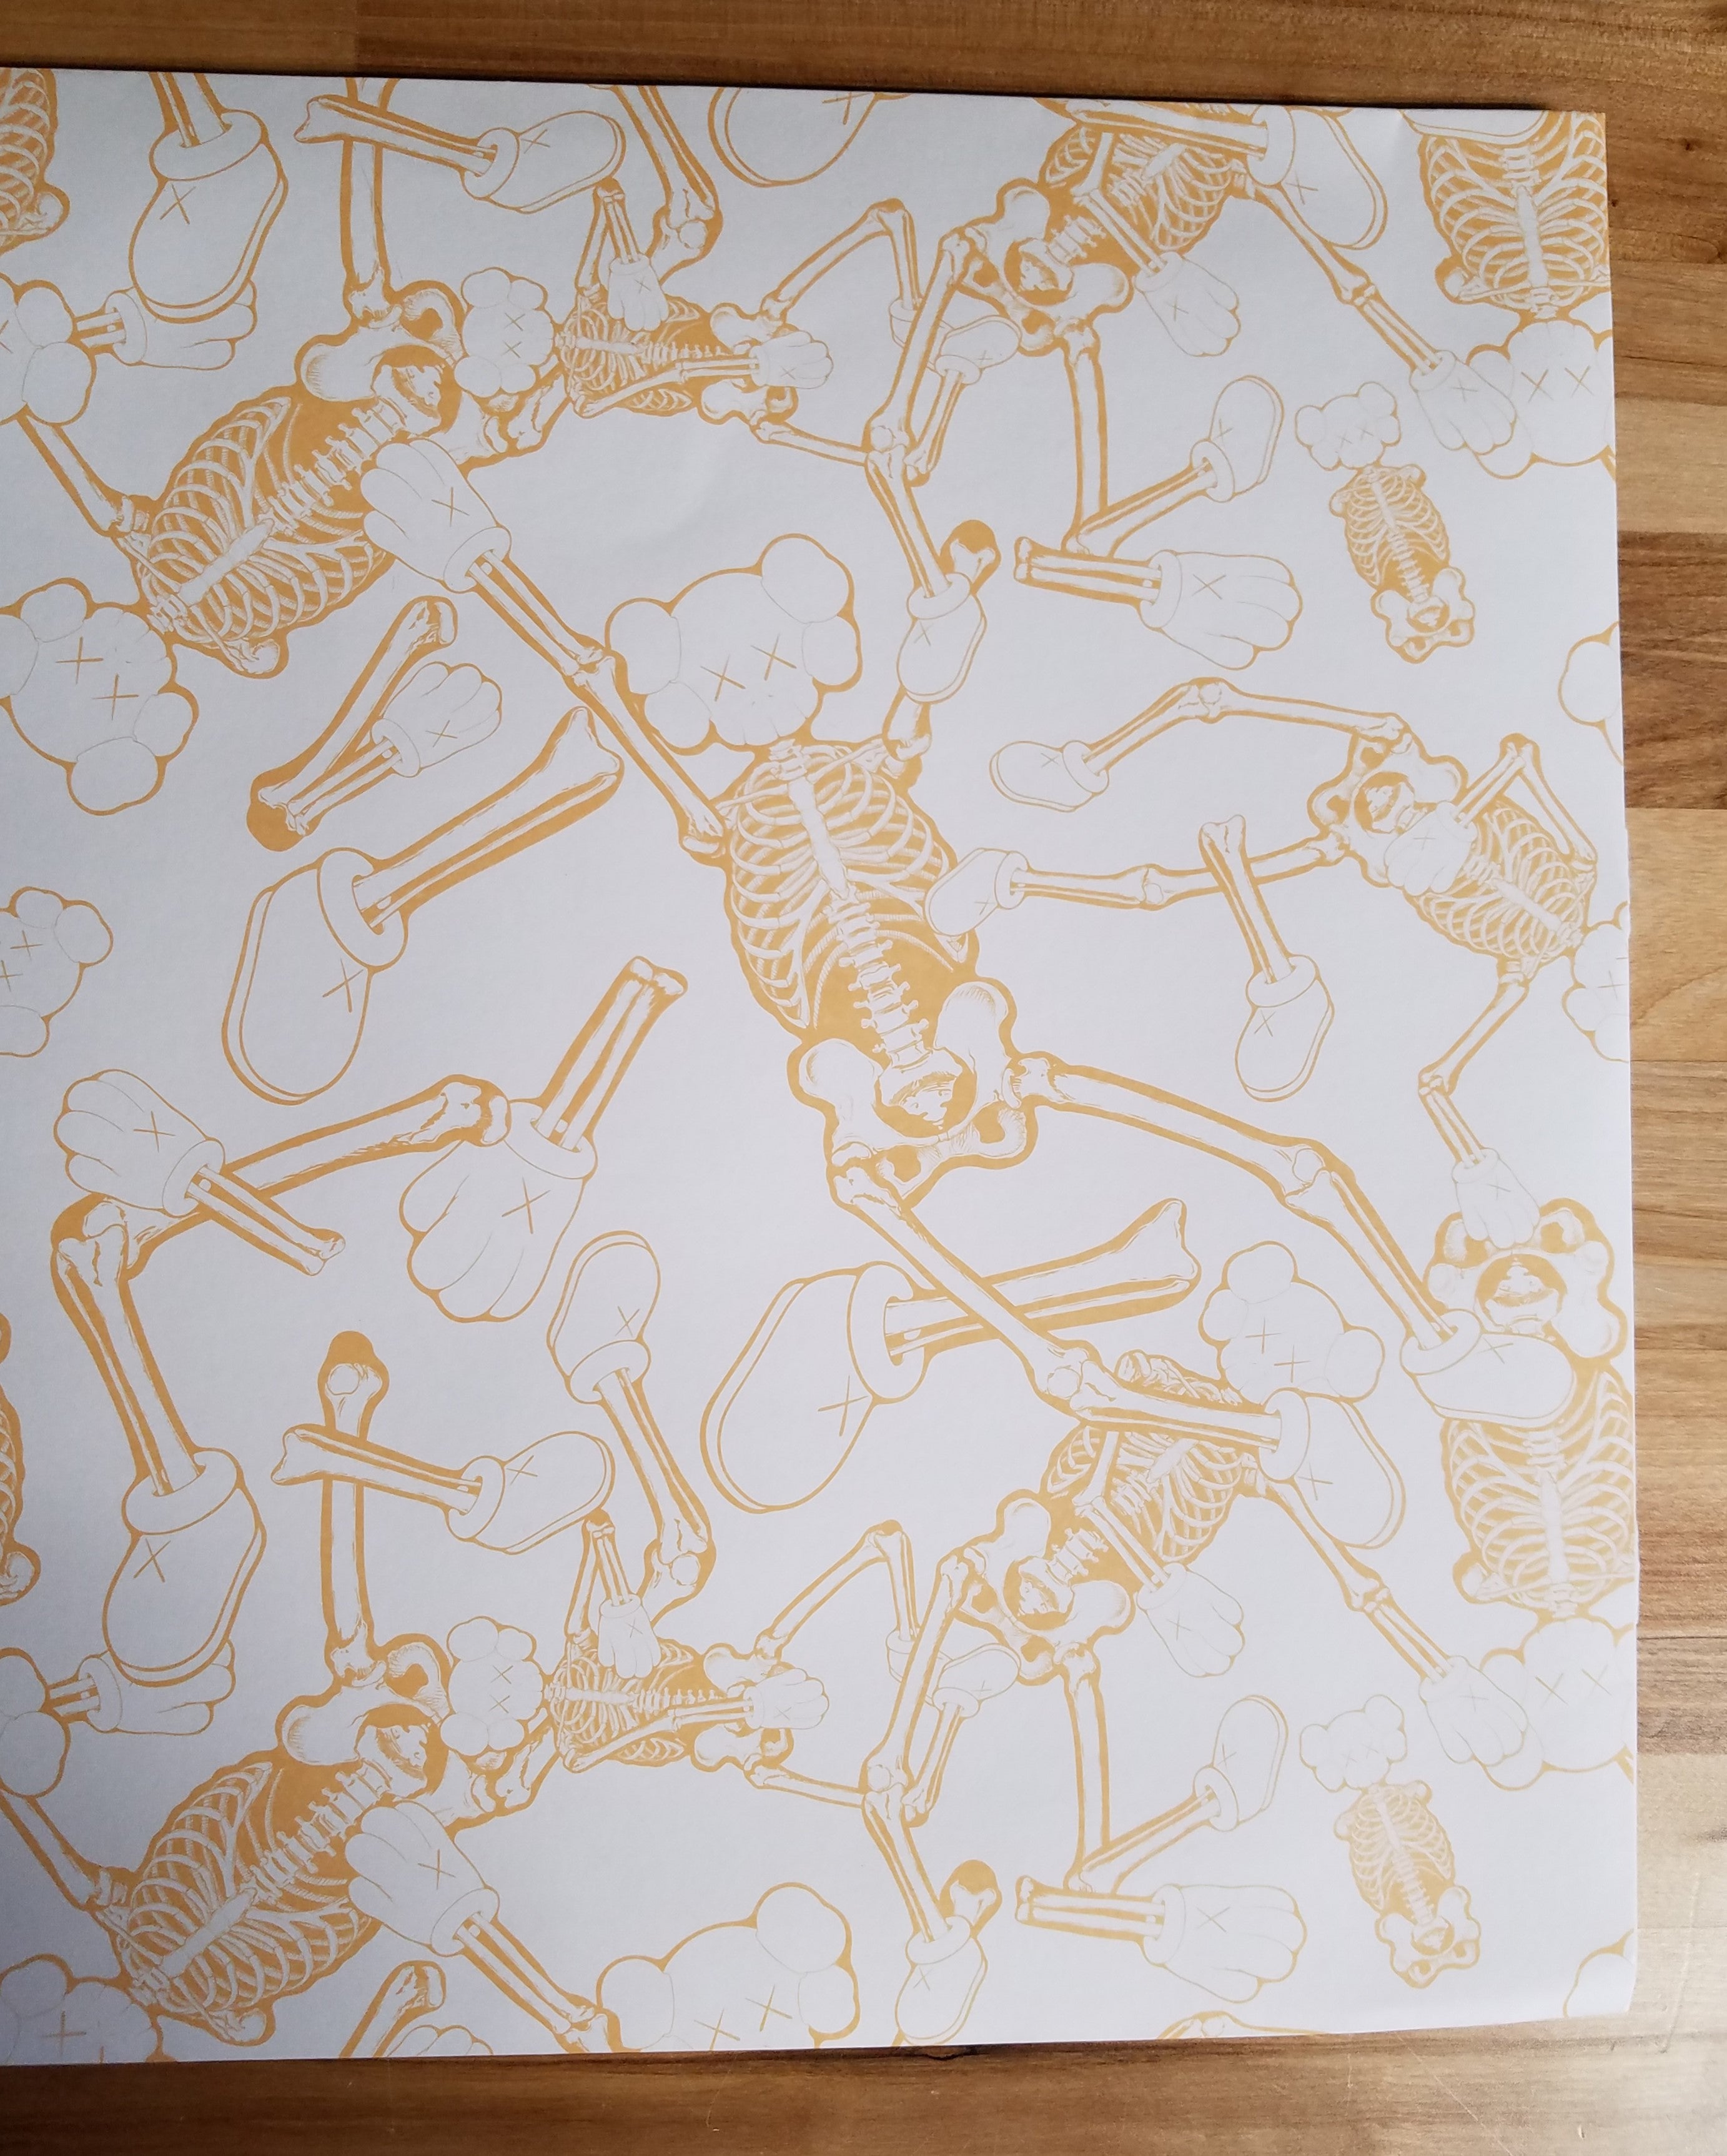 KAWS Skeleton Cardboard Wall Hanging - Bone